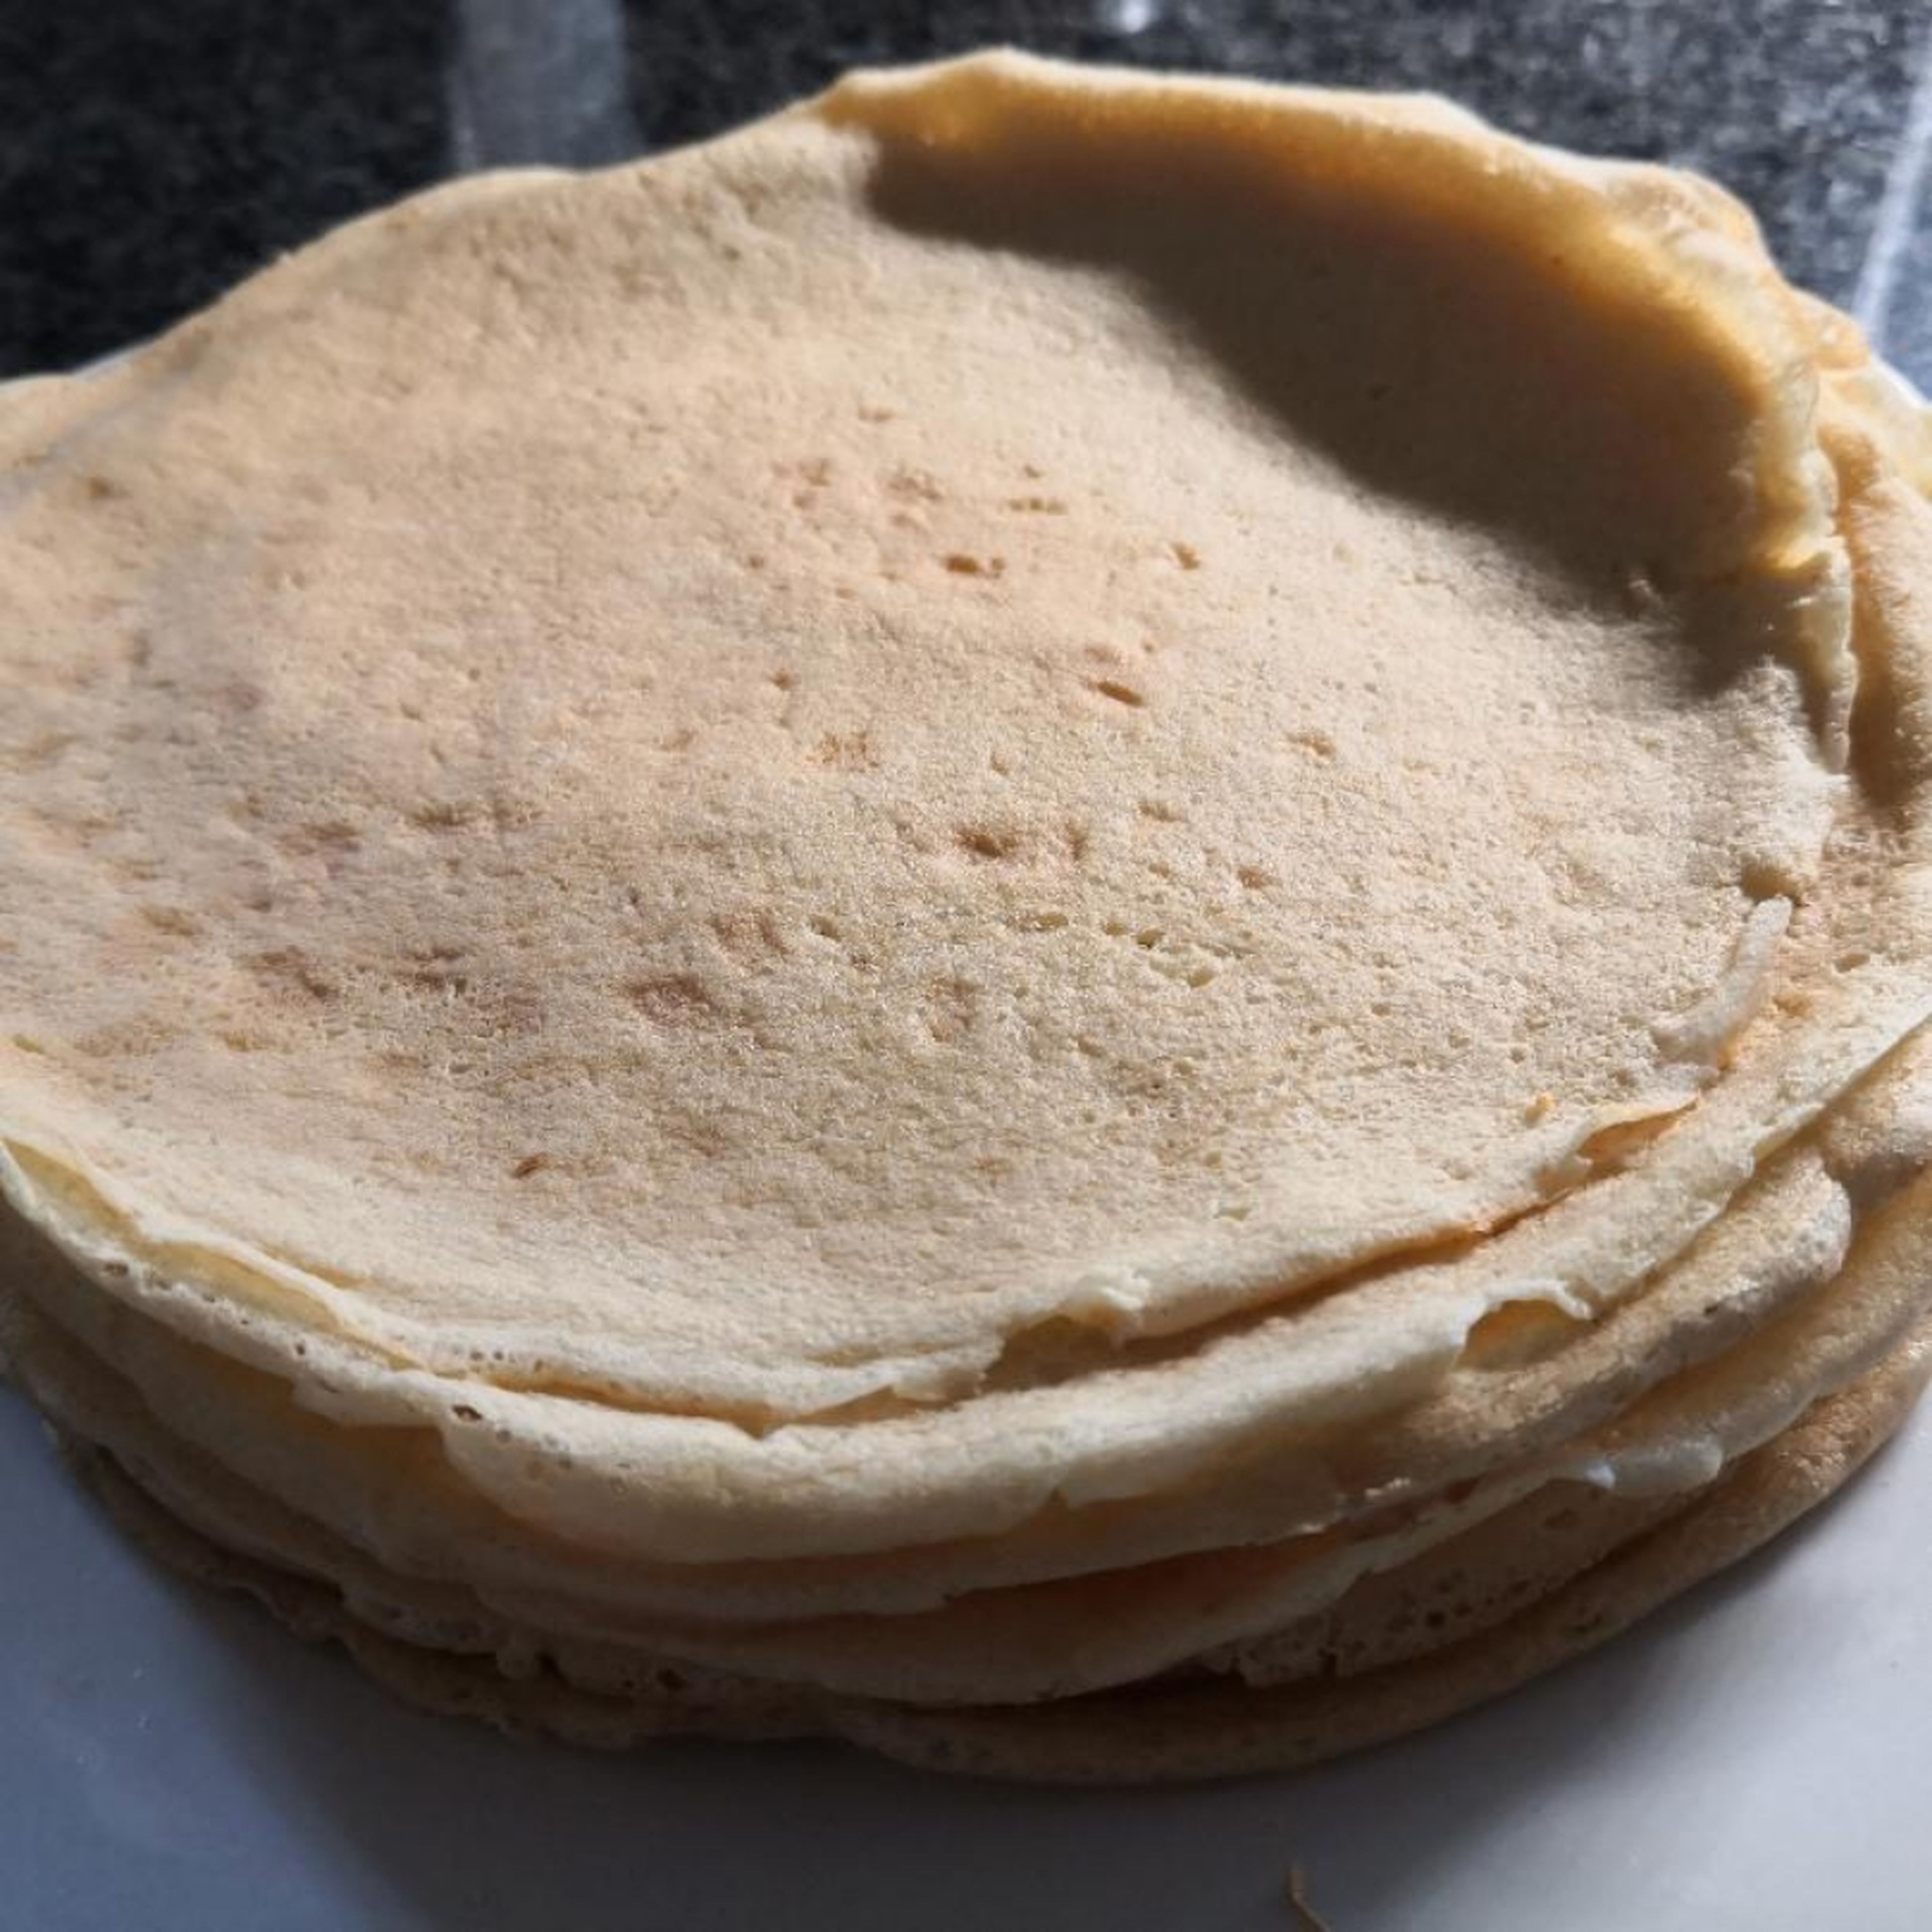 Easy peasy pancakes